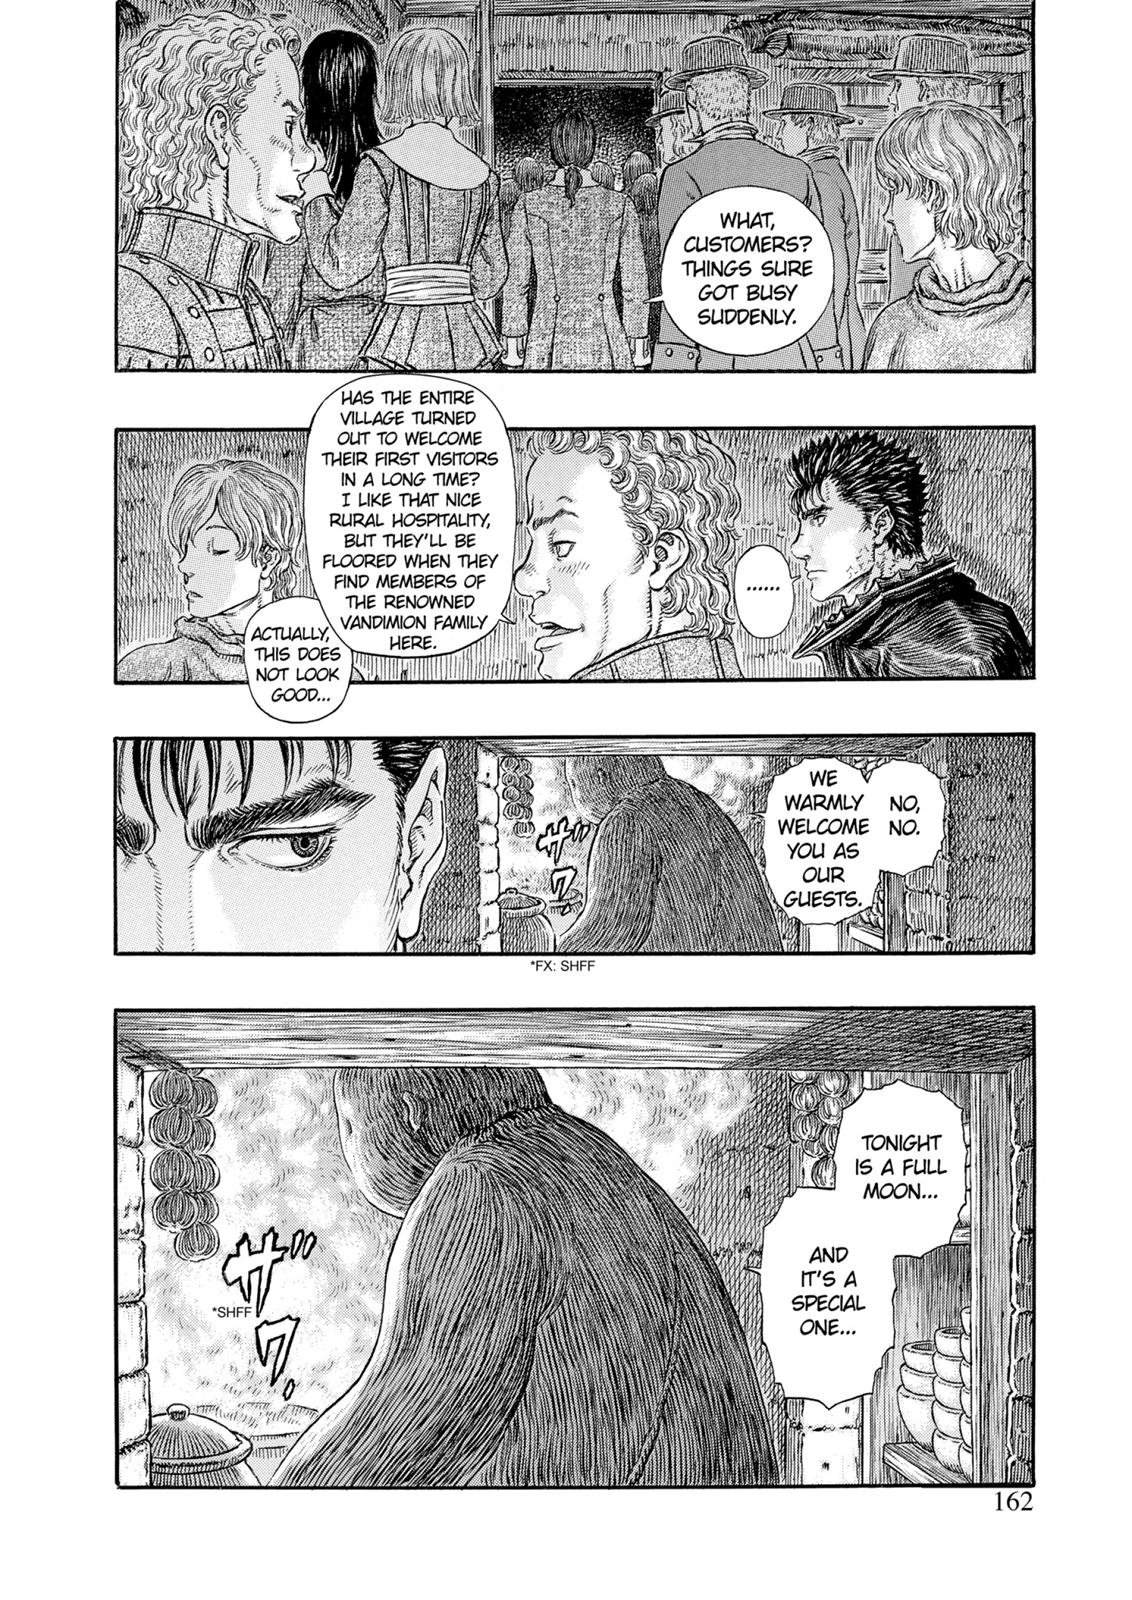 Berserk Manga Chapter 313 image 14